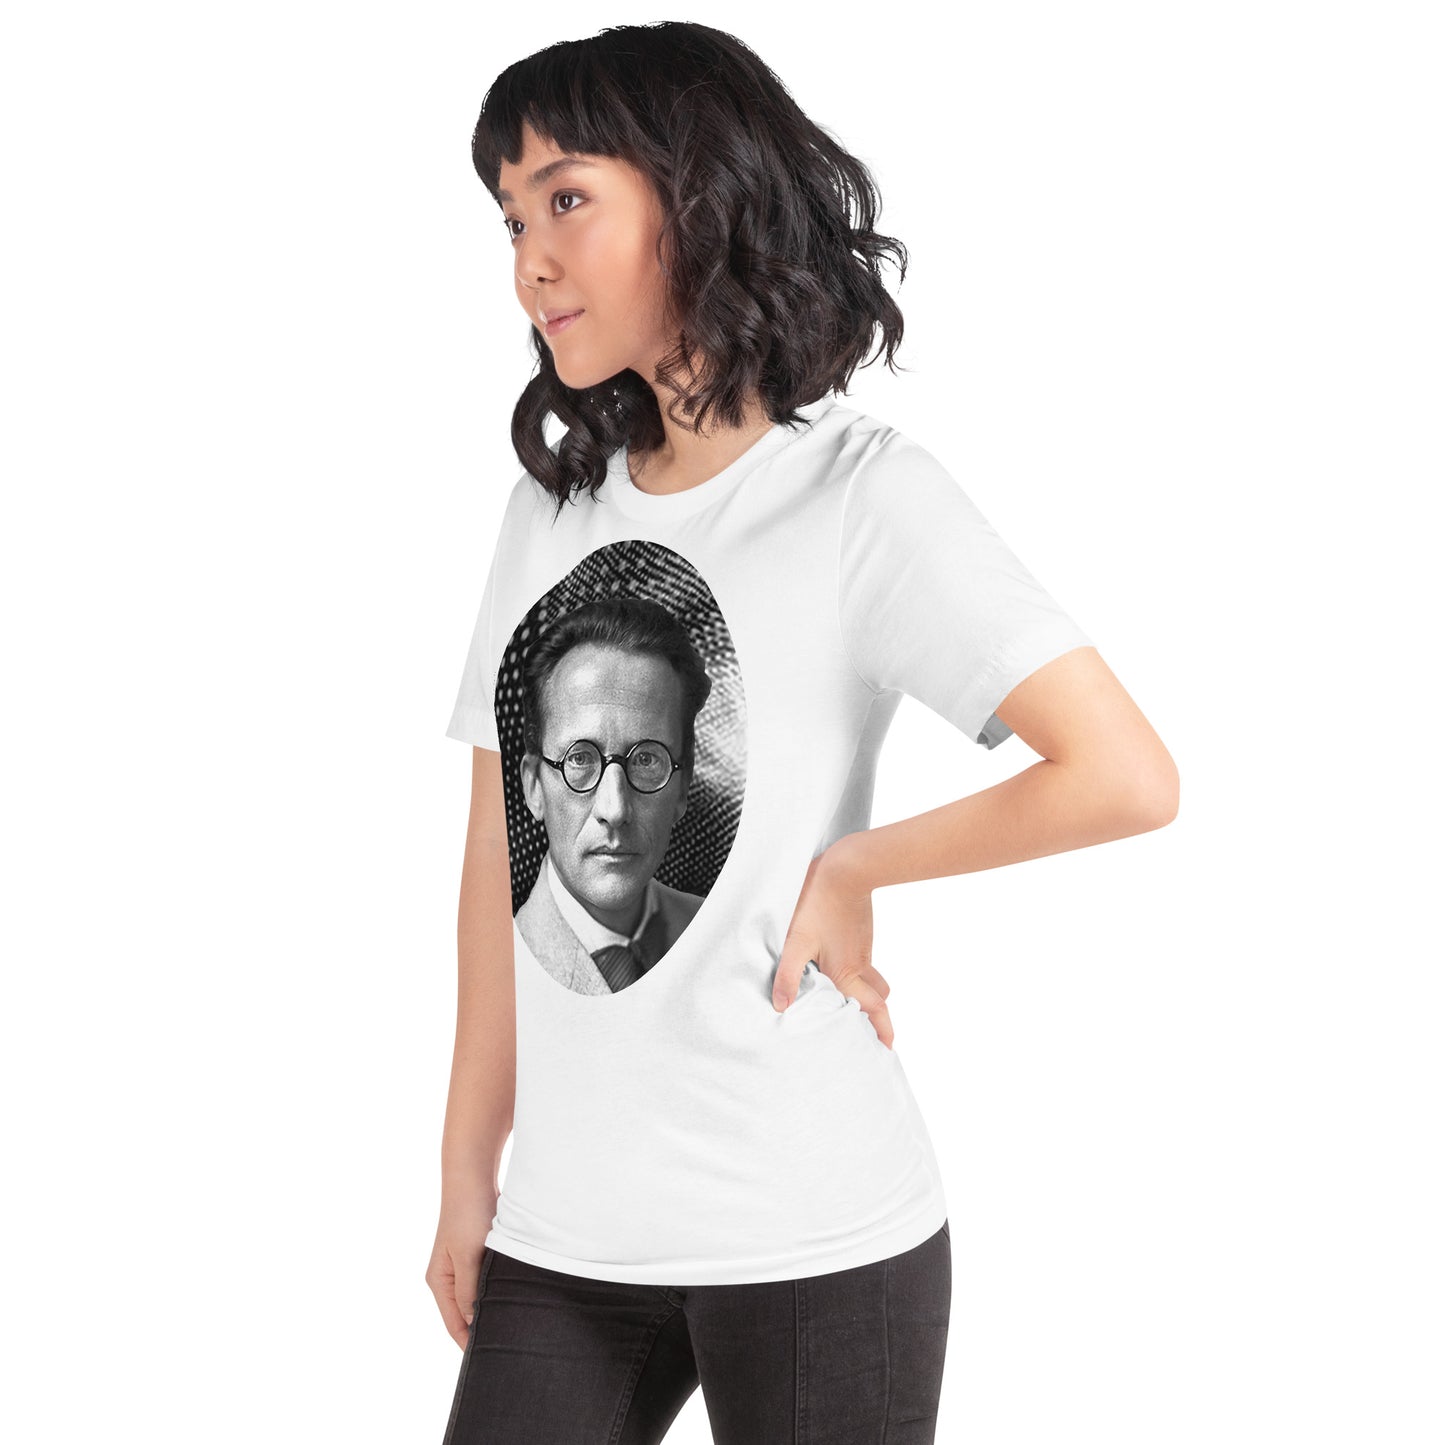 Erwin Schrödinger Unisex T-shirt